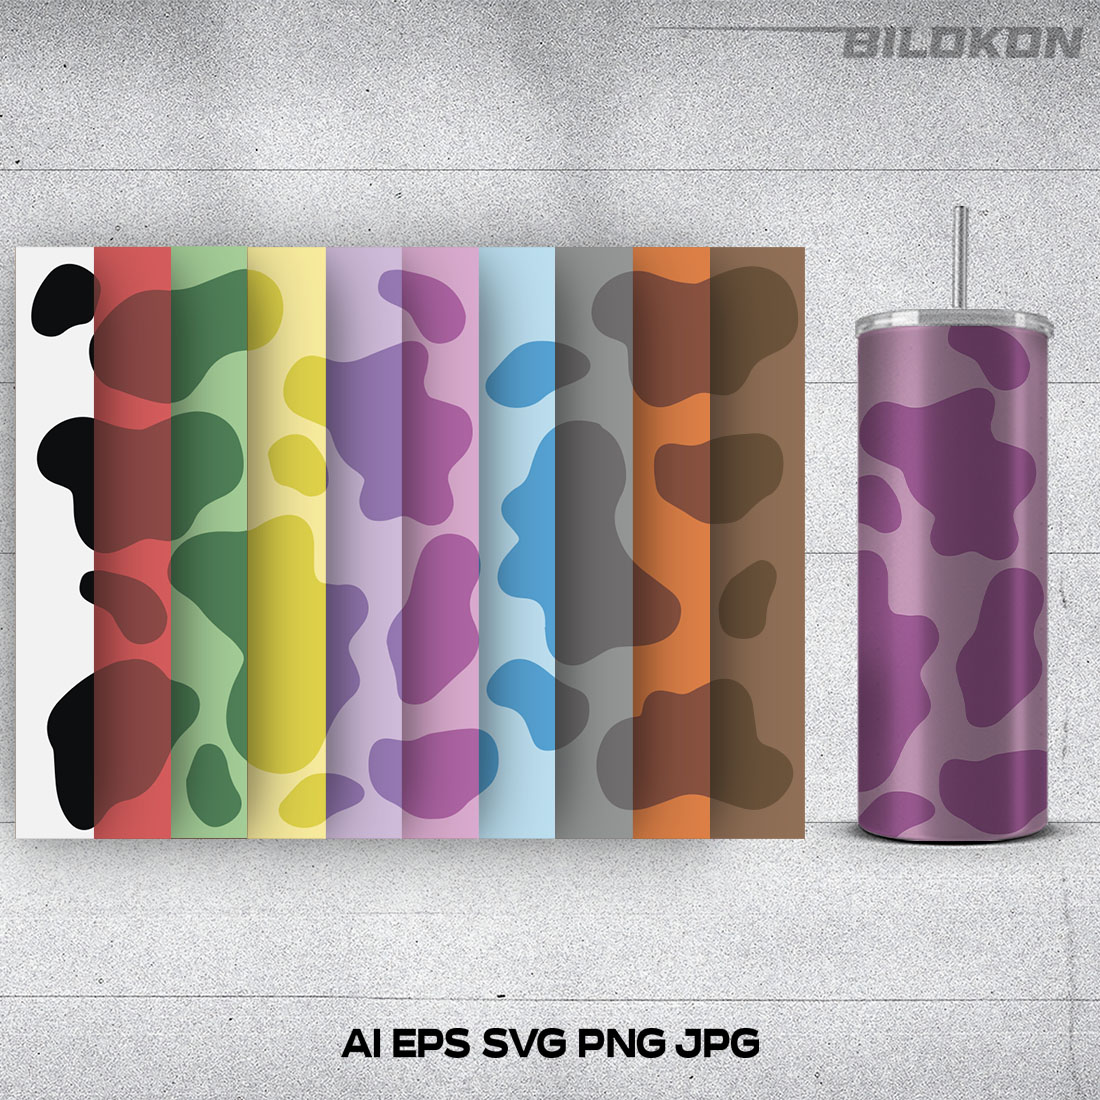 Cow pattern print set colour, Tumbler design, SVG Vector cover image.